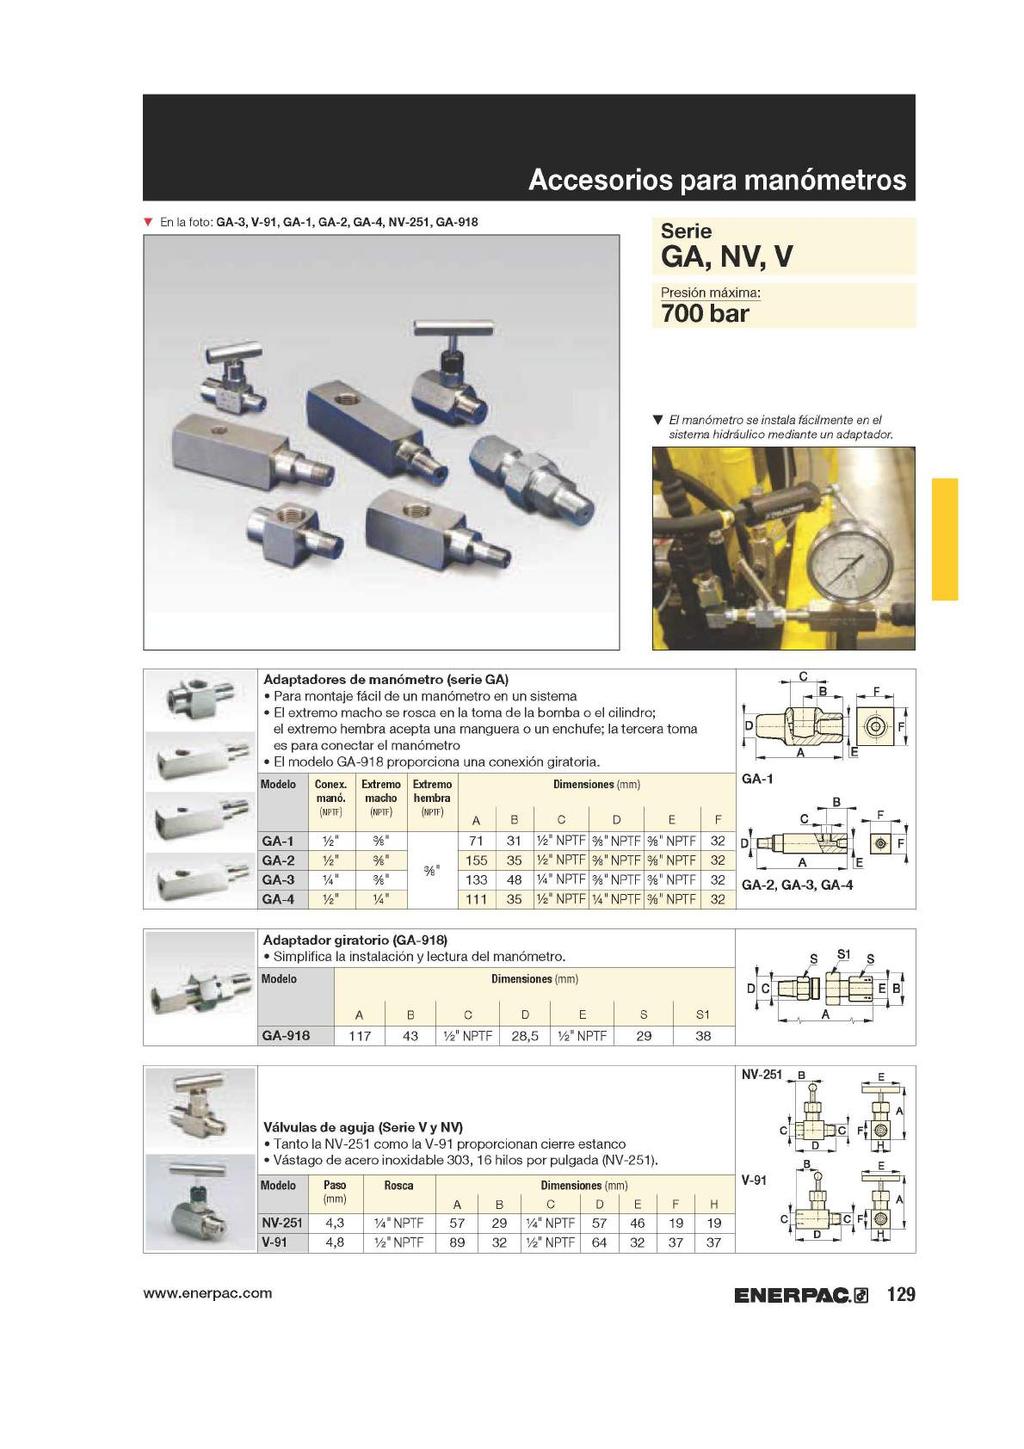 T En la foto: GA-3, V-91, GA-1, GA-2, GA-4, NV-251, GA-918 Accesorios para manómetros Serie GA, NV, V Presión máxima: 700 bar El manómetro se instala fácilmente en el sistema hidráulico mediante un